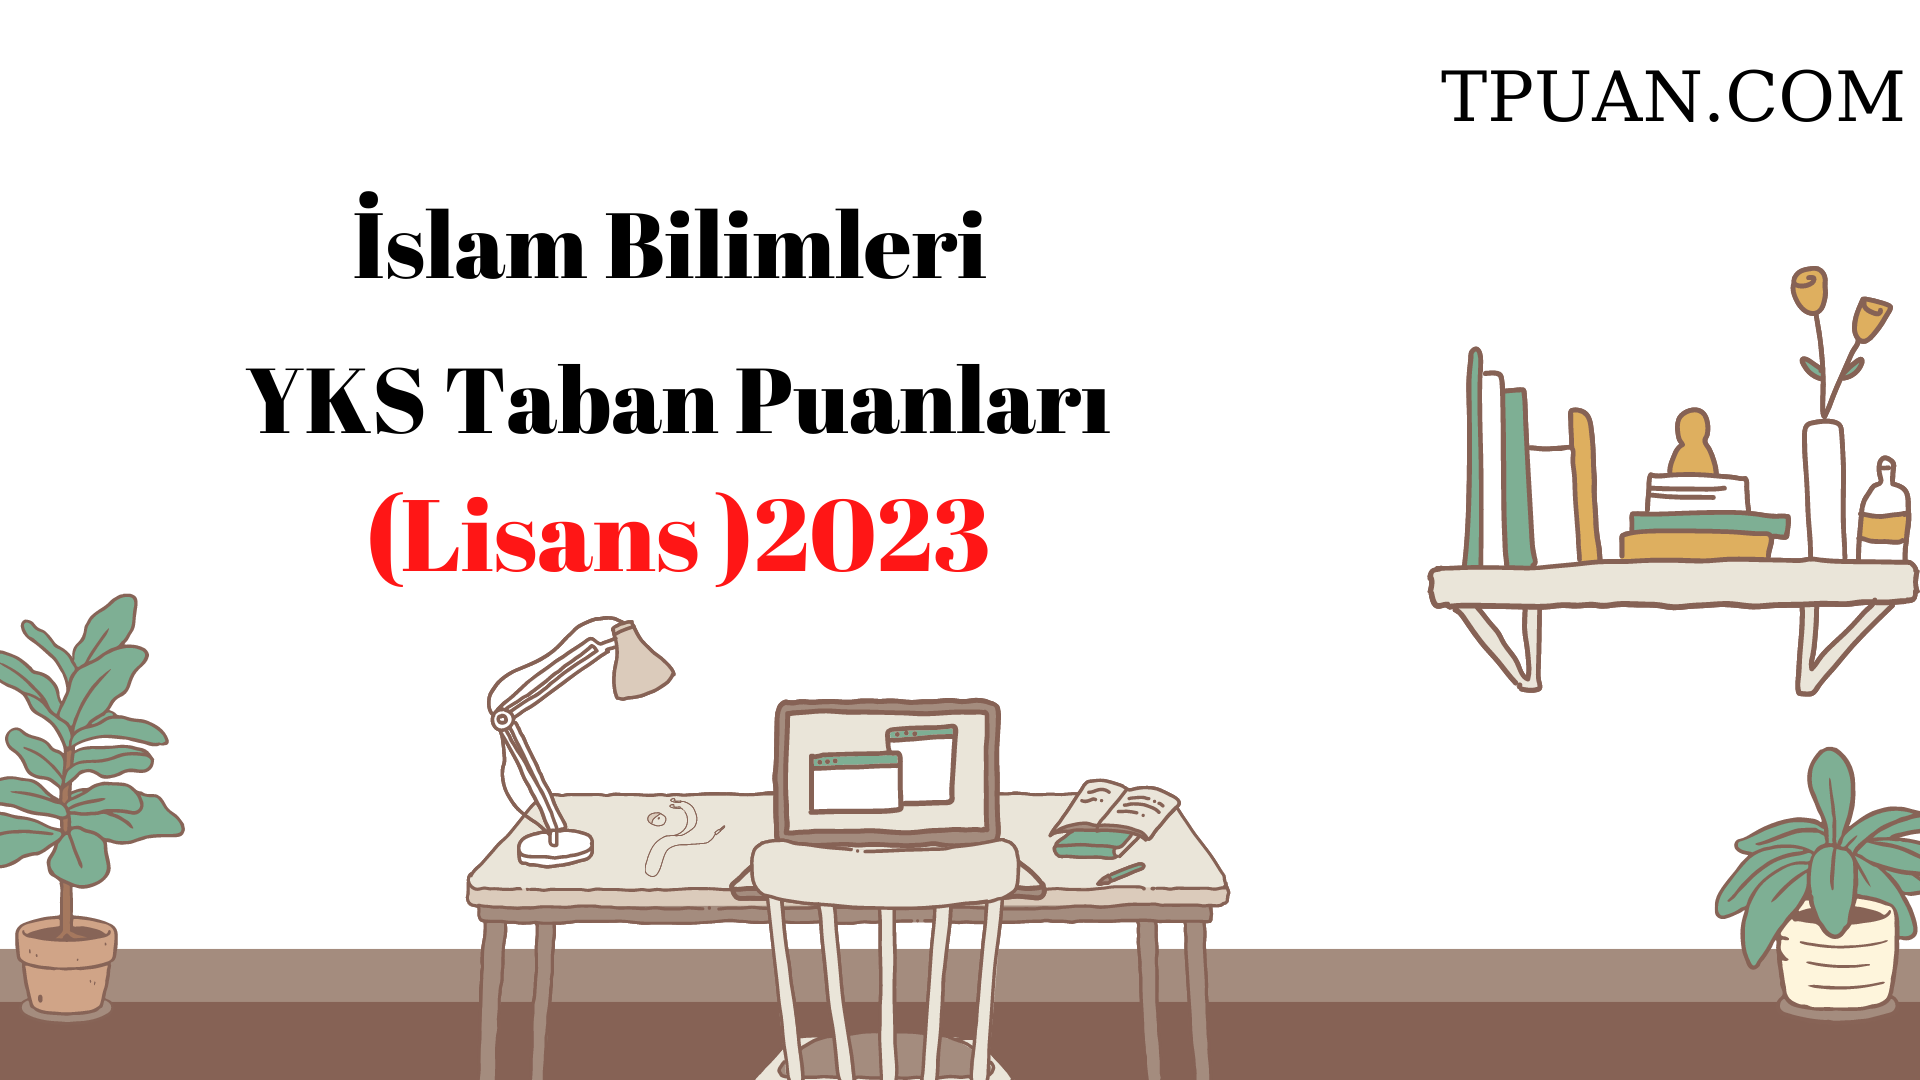  İslam Bilimleri Bölümü YKS Taban Puanları (4 Yıllık) 2023